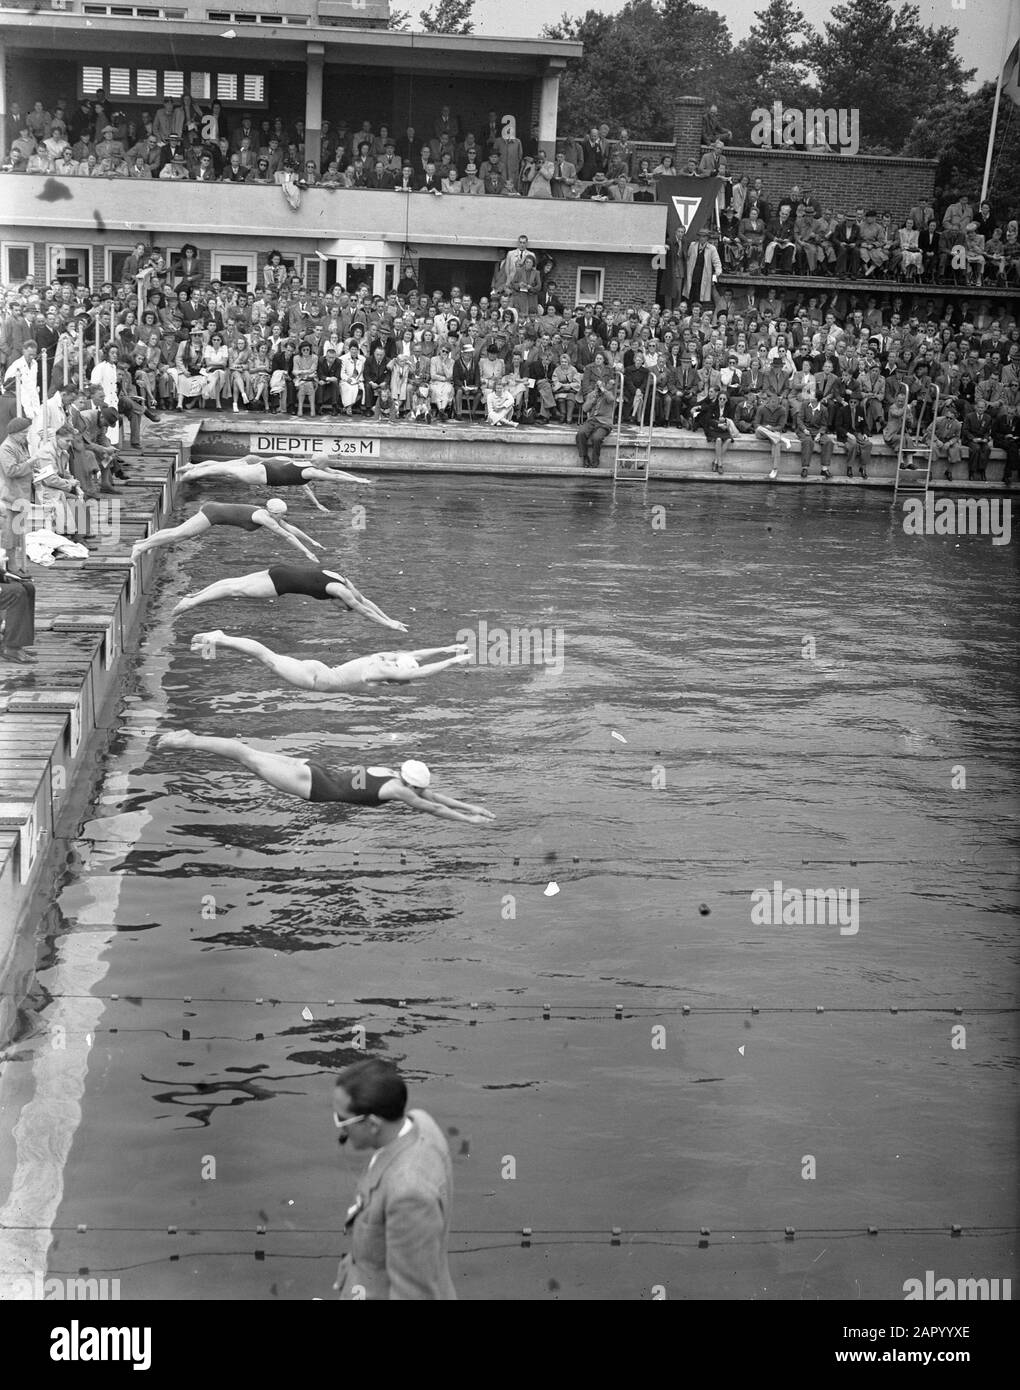 Schwimmweltmeisterschaften bei s Gravenhage Start 100 Meter Kriechen Datum: 10. Juli 1948 Schlagwörter: Schwimmweltmeisterschaften Stockfoto